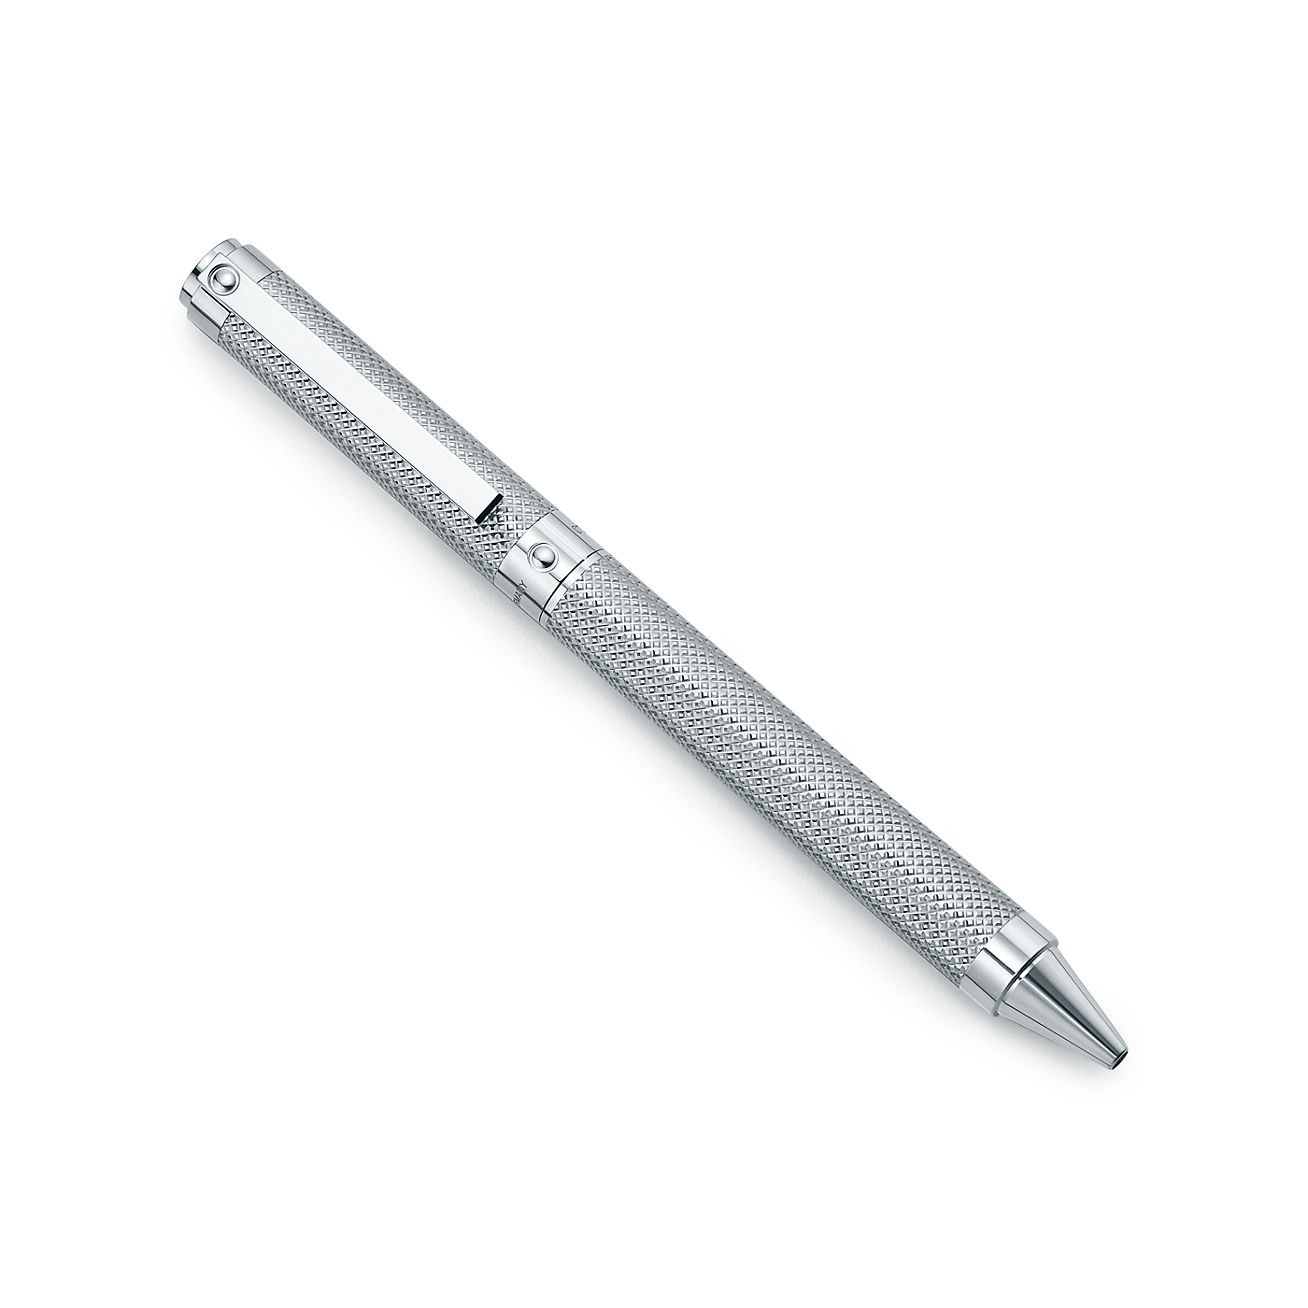 Diamond Point ballpoint pen in sterling silver.